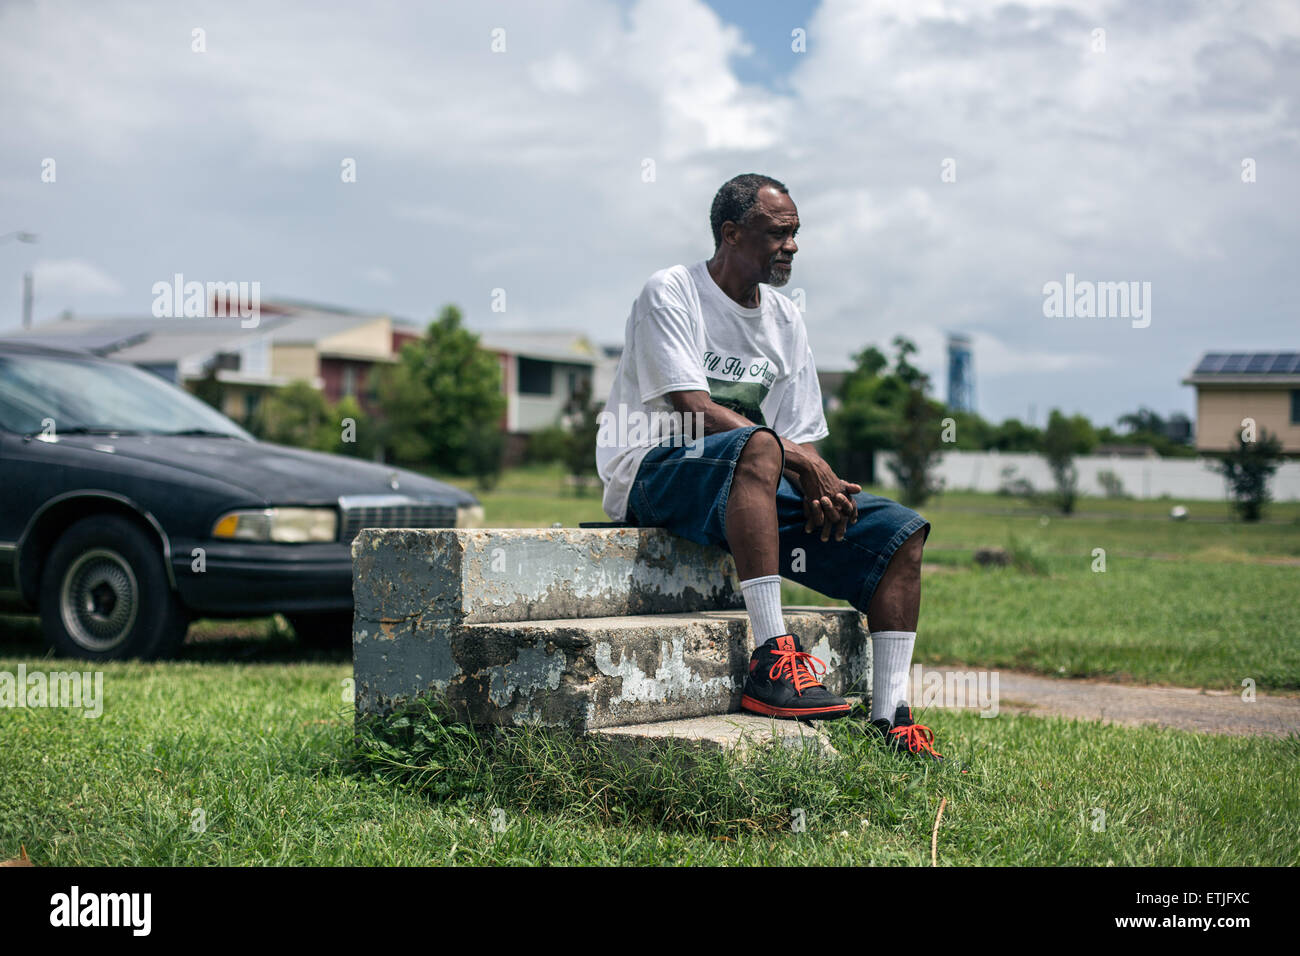 (150614) -- LA NOUVELLE ORLÉANS, le 14 juin 2015 (Xinhua) -- Robert Green, un résident du quartier neuvième survivant et de l'ouragan Katrina, est assis sur les étapes qu'une fois en voyant sa mère s'abaisser Ninth Ward accueil à la Nouvelle Orléans, à Lower Ninth Ward, La Nouvelle-Orléans, 12 juin, 2015. Green a perdu sa mère et sa petite-fille en 2005, l'ouragan dévastateur Katrina. Dix ans après l'ouragan Katrina a la Nouvelle Orléans pour ses genoux et laissé une empreinte émotionnelle à travers les États-Unis en tant que personnes vu comment le gouvernement américain n'a pas réussi à répondre rapidement, essentiellement une communauté afro-américaine de la ville encore Banque D'Images